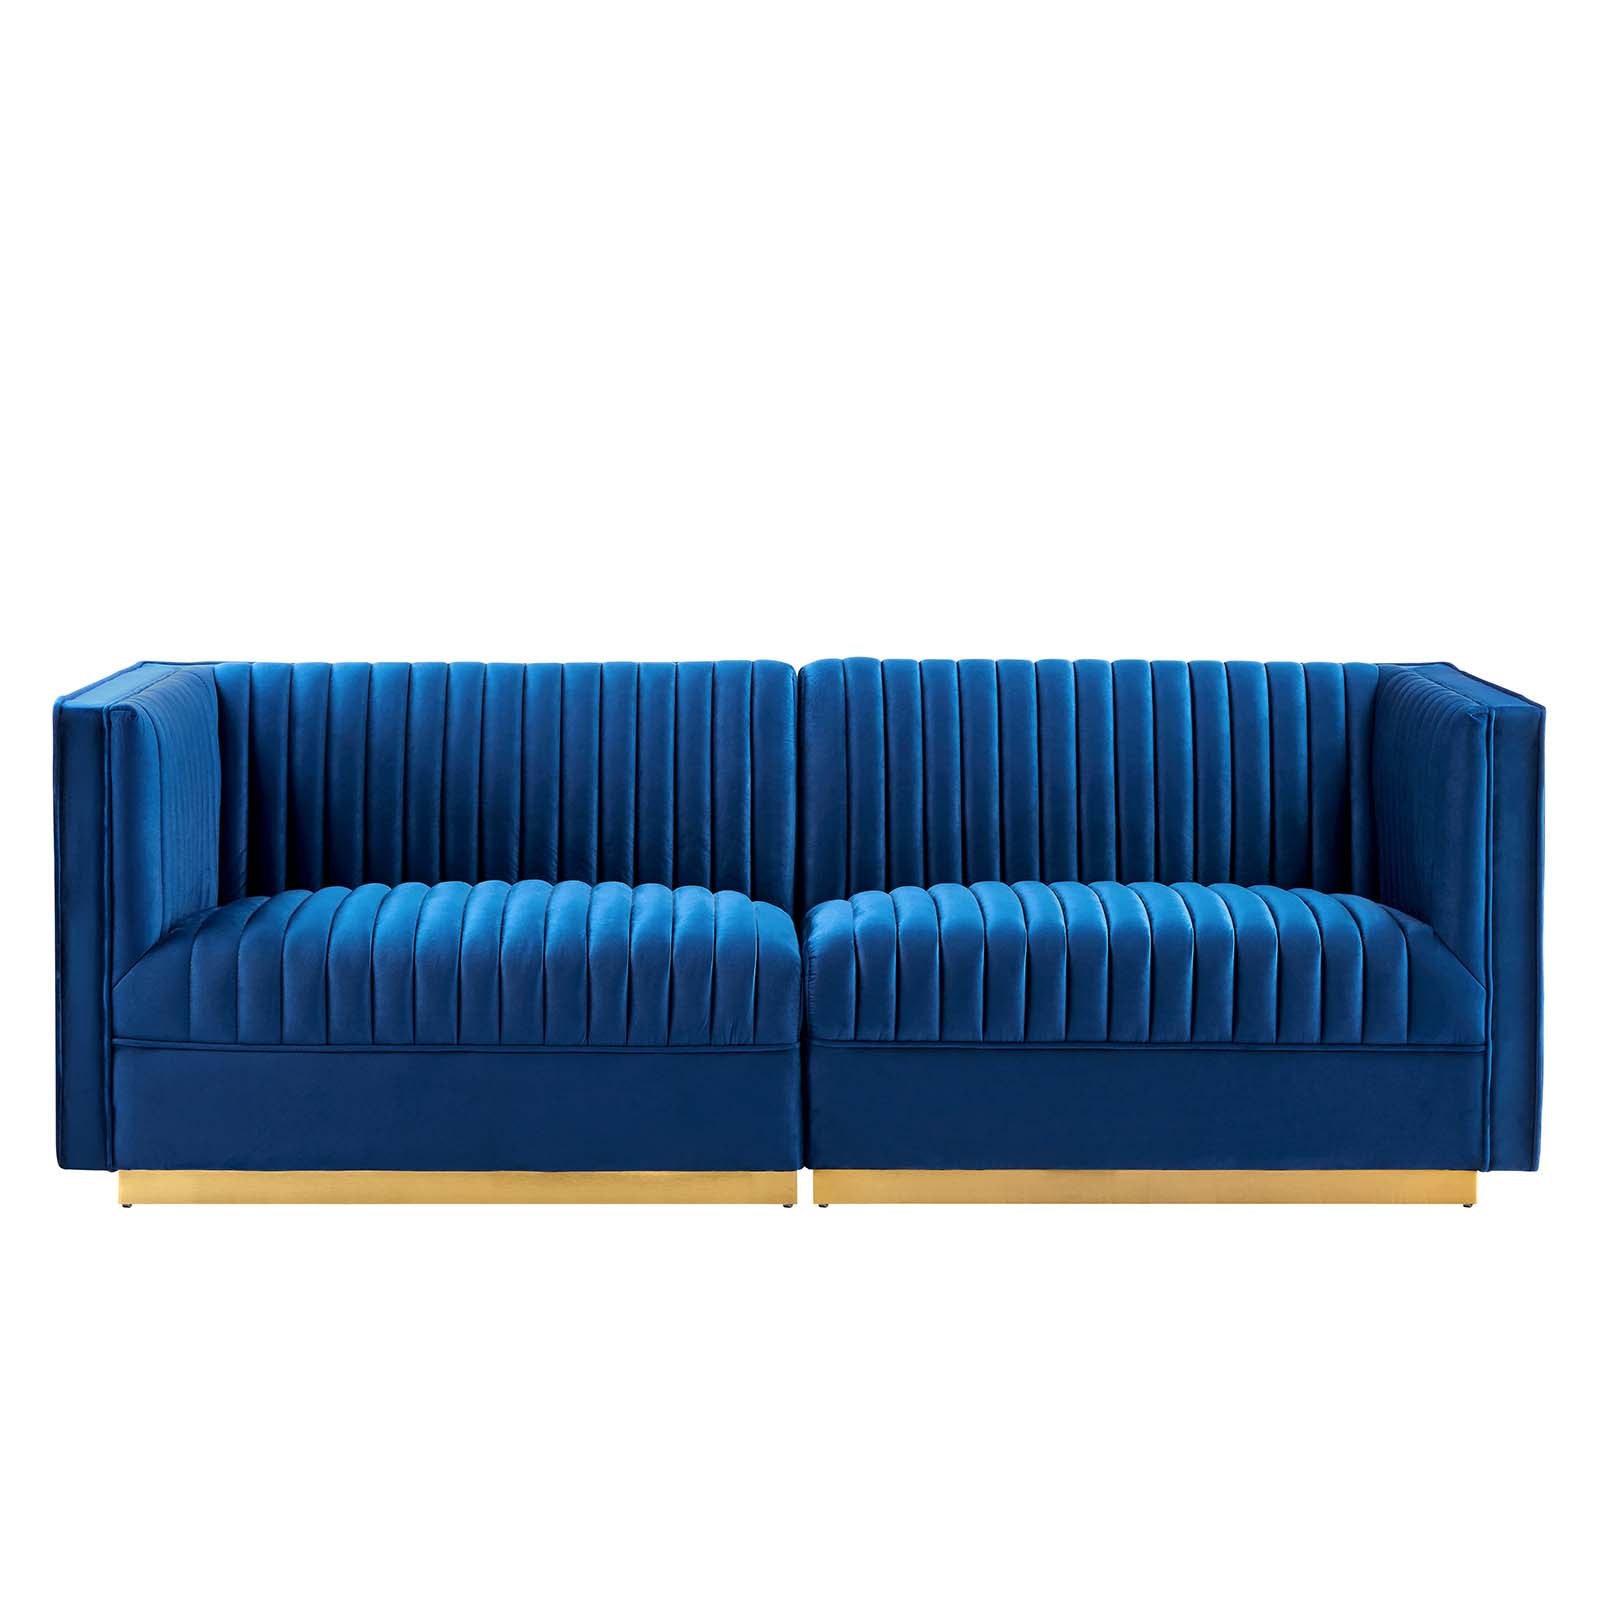 Sanguine Channel Tufted Performance Velvet Modular Sectional Sofa Loveseat - East Shore Modern Home Furnishings